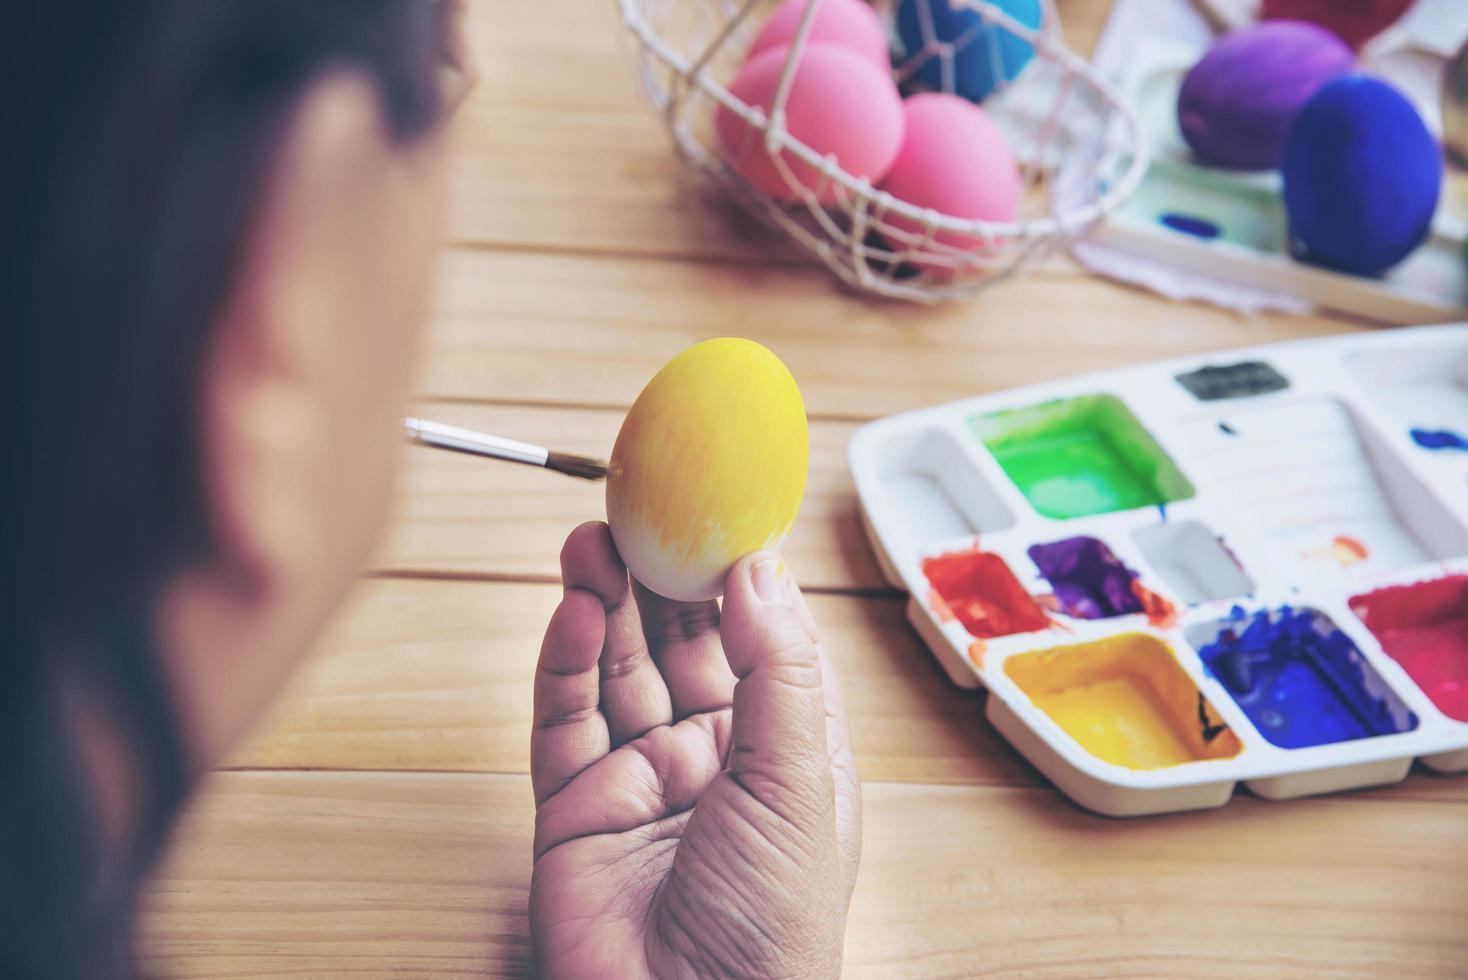 pessoas pintando ovos de páscoa coloridos - conceito de feriado nacional de celebração de pessoas foto